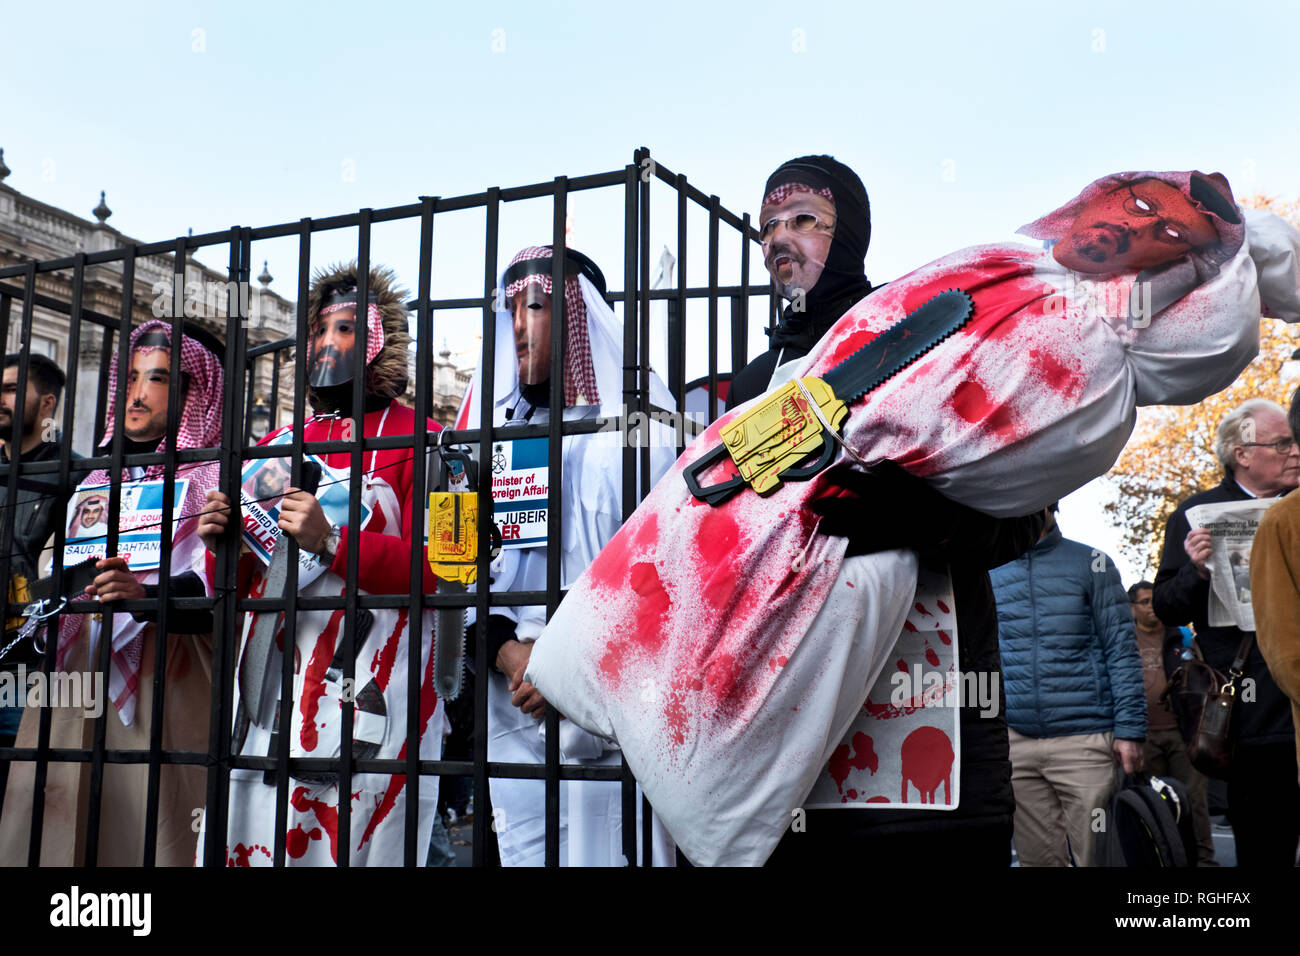 In seguito ci uccide Arabia giornalista Jamal Khashoggi in Turchia, dimostranti è venuto vestito come Arabia funzionari, comprese Saudi Crown Prince Mohammad bin Salman, all'interno di un fake cella di prigione . Foto Stock